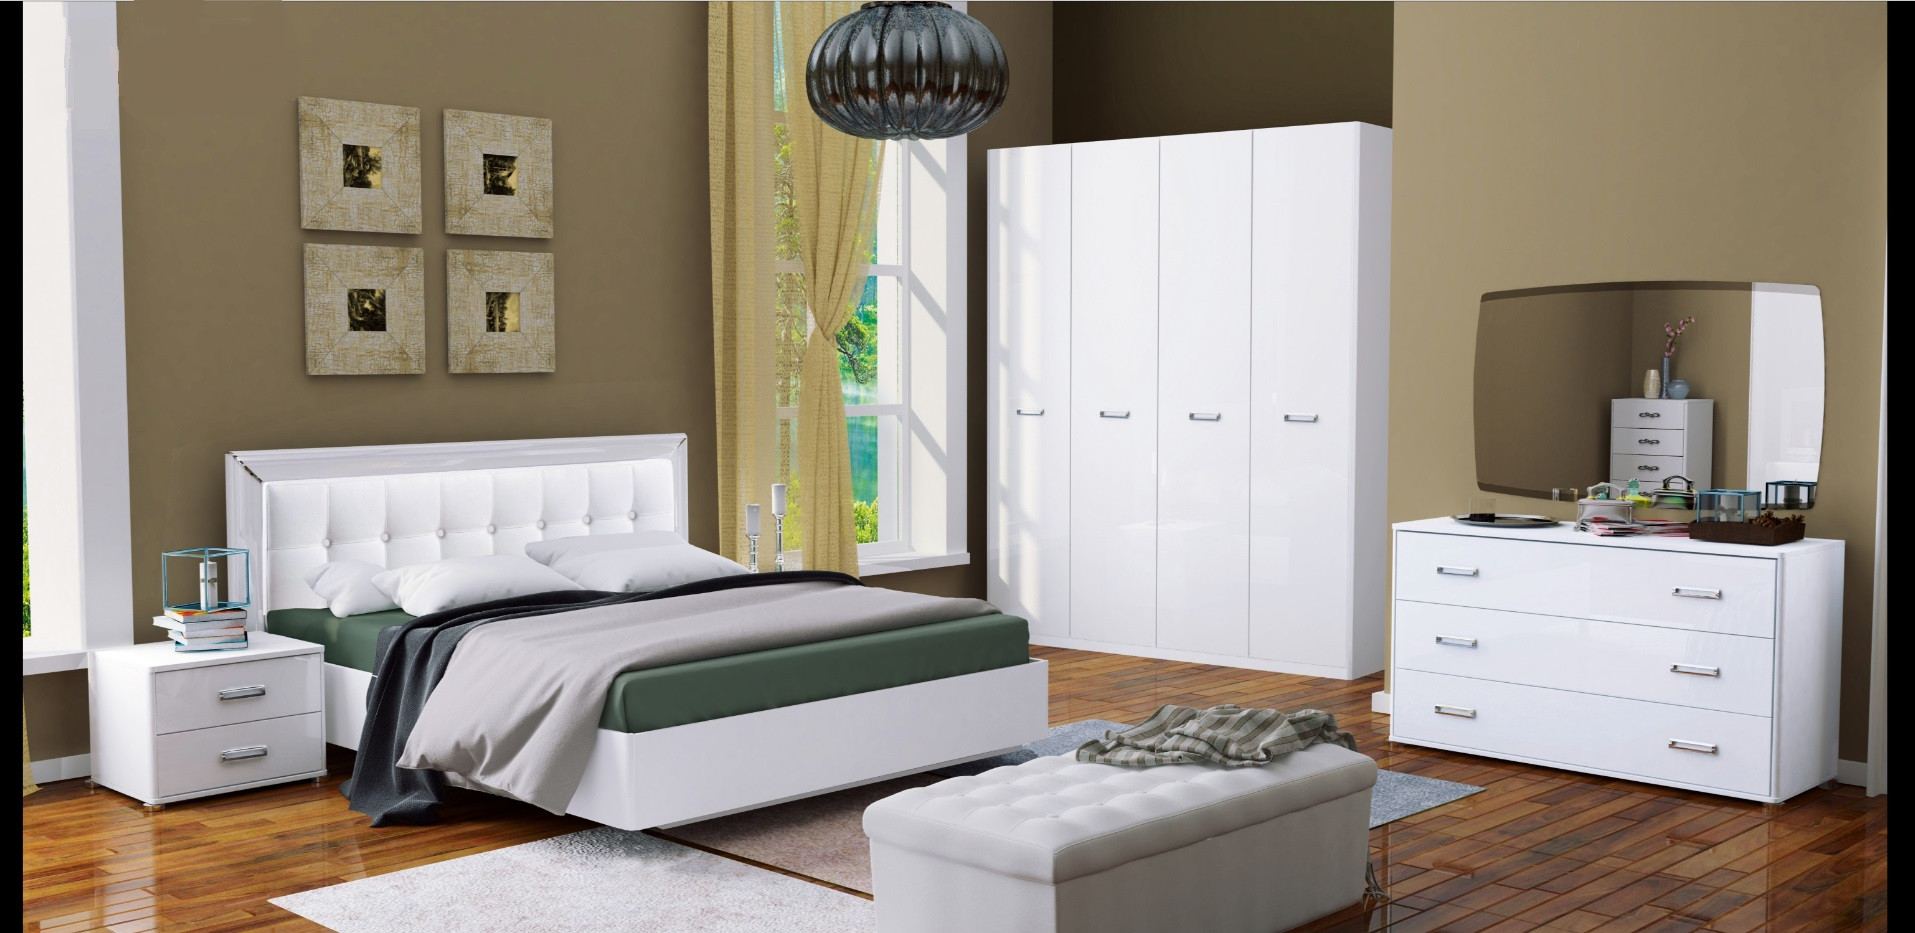 Completo letto bianco BELLA + 2 comodini + cassettiera + armadio